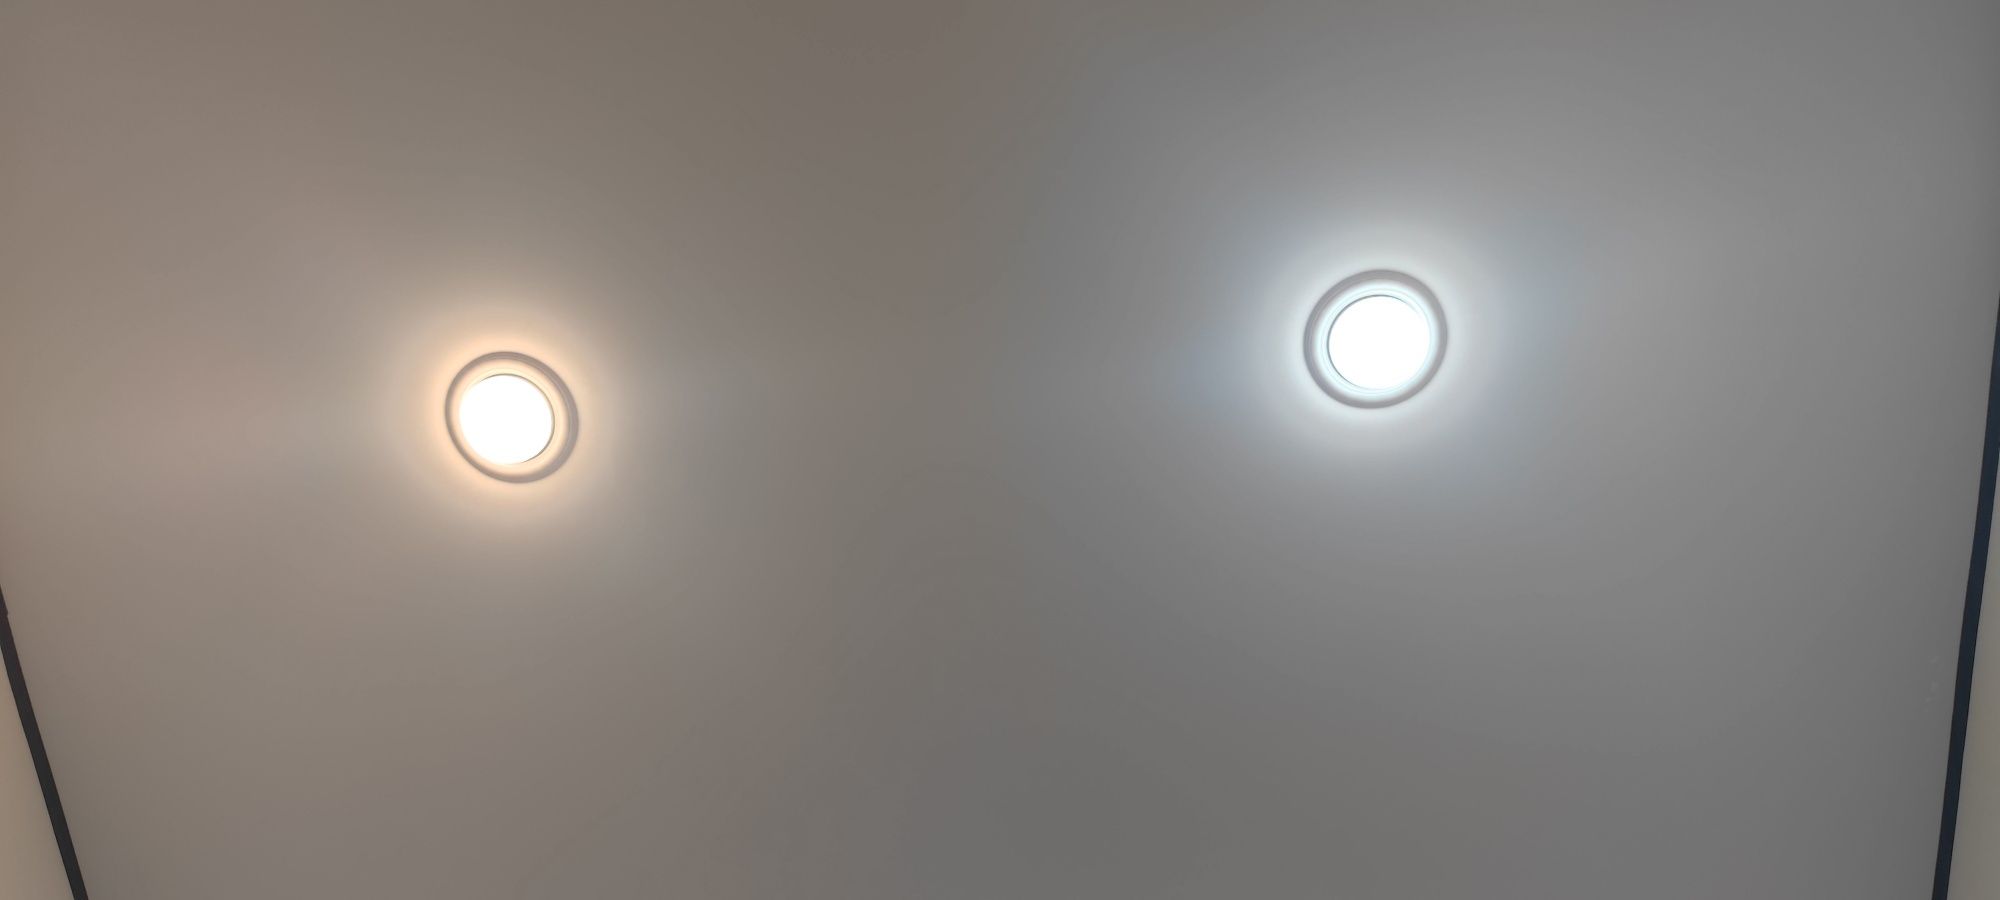 Лампы под софиты gx53 под натяжные потолки